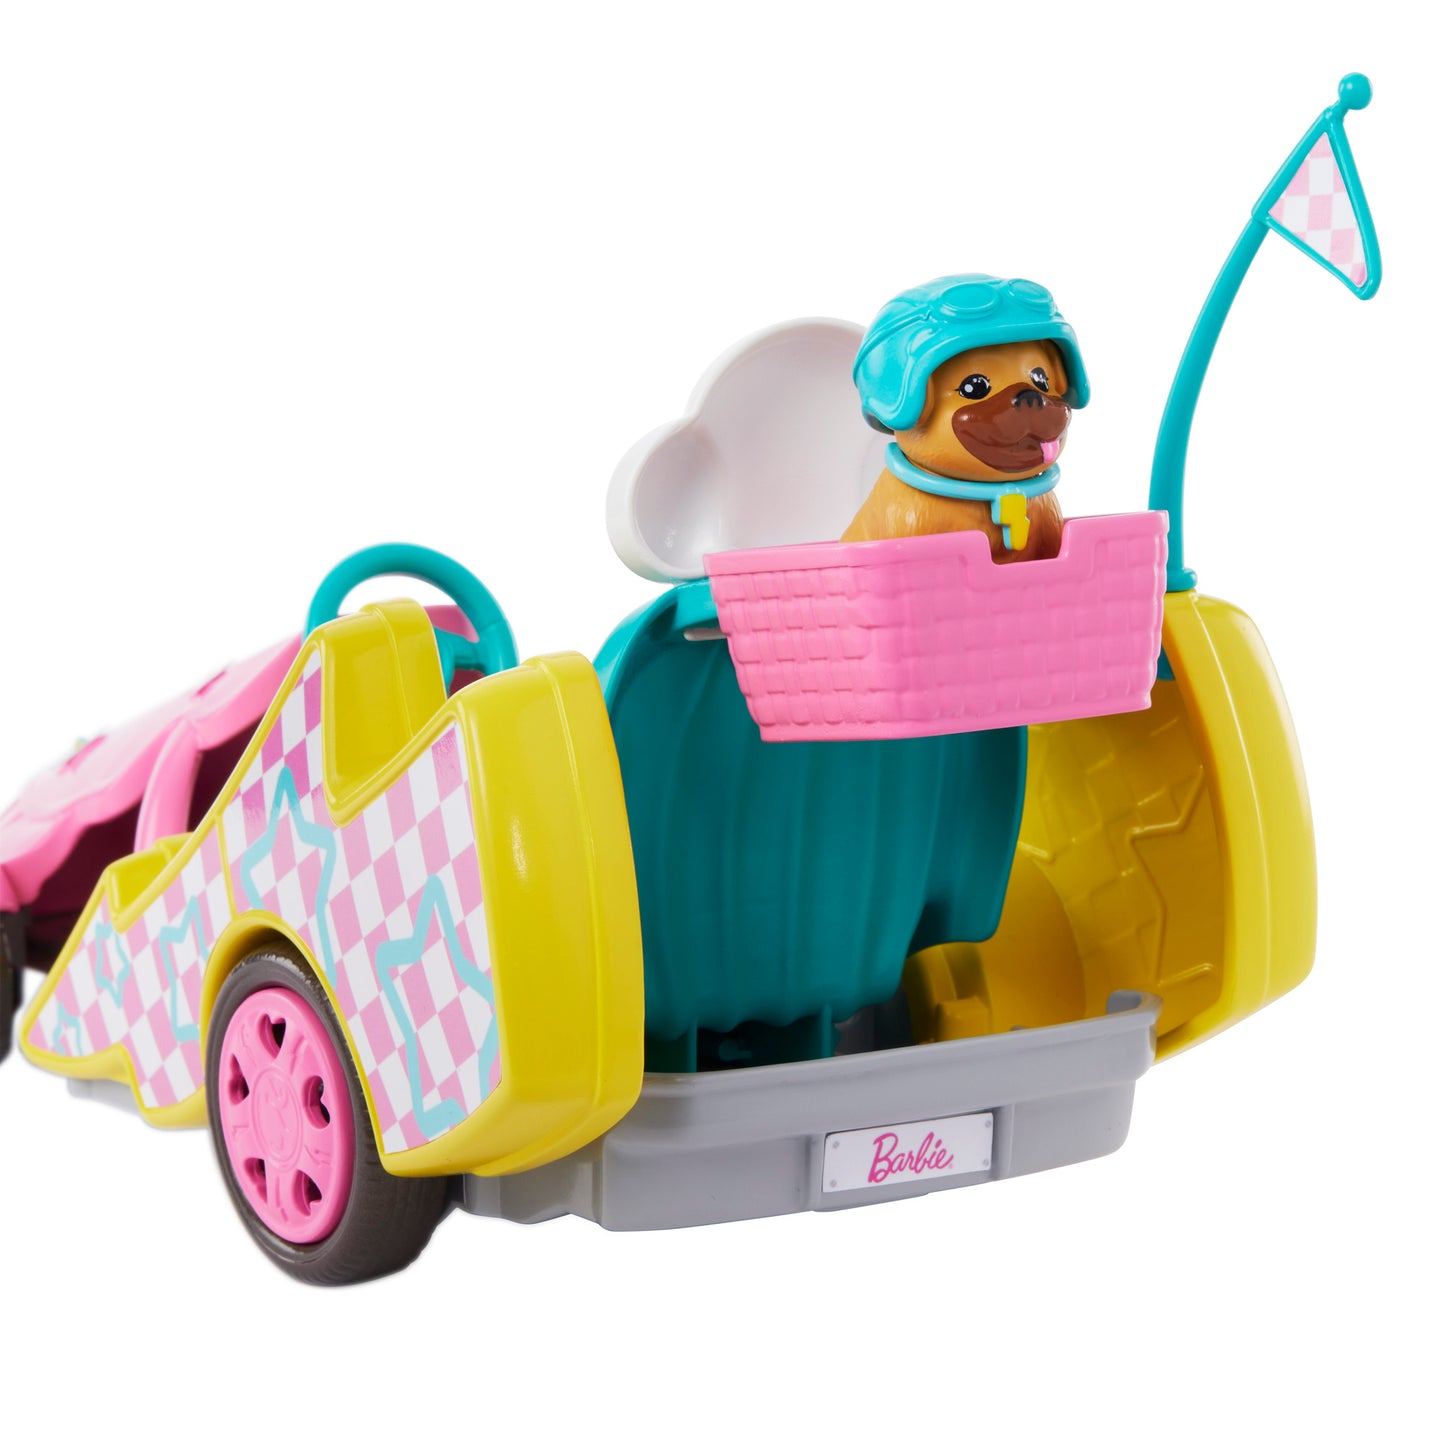 Barbie Stacie Doll with Go-Kart Car